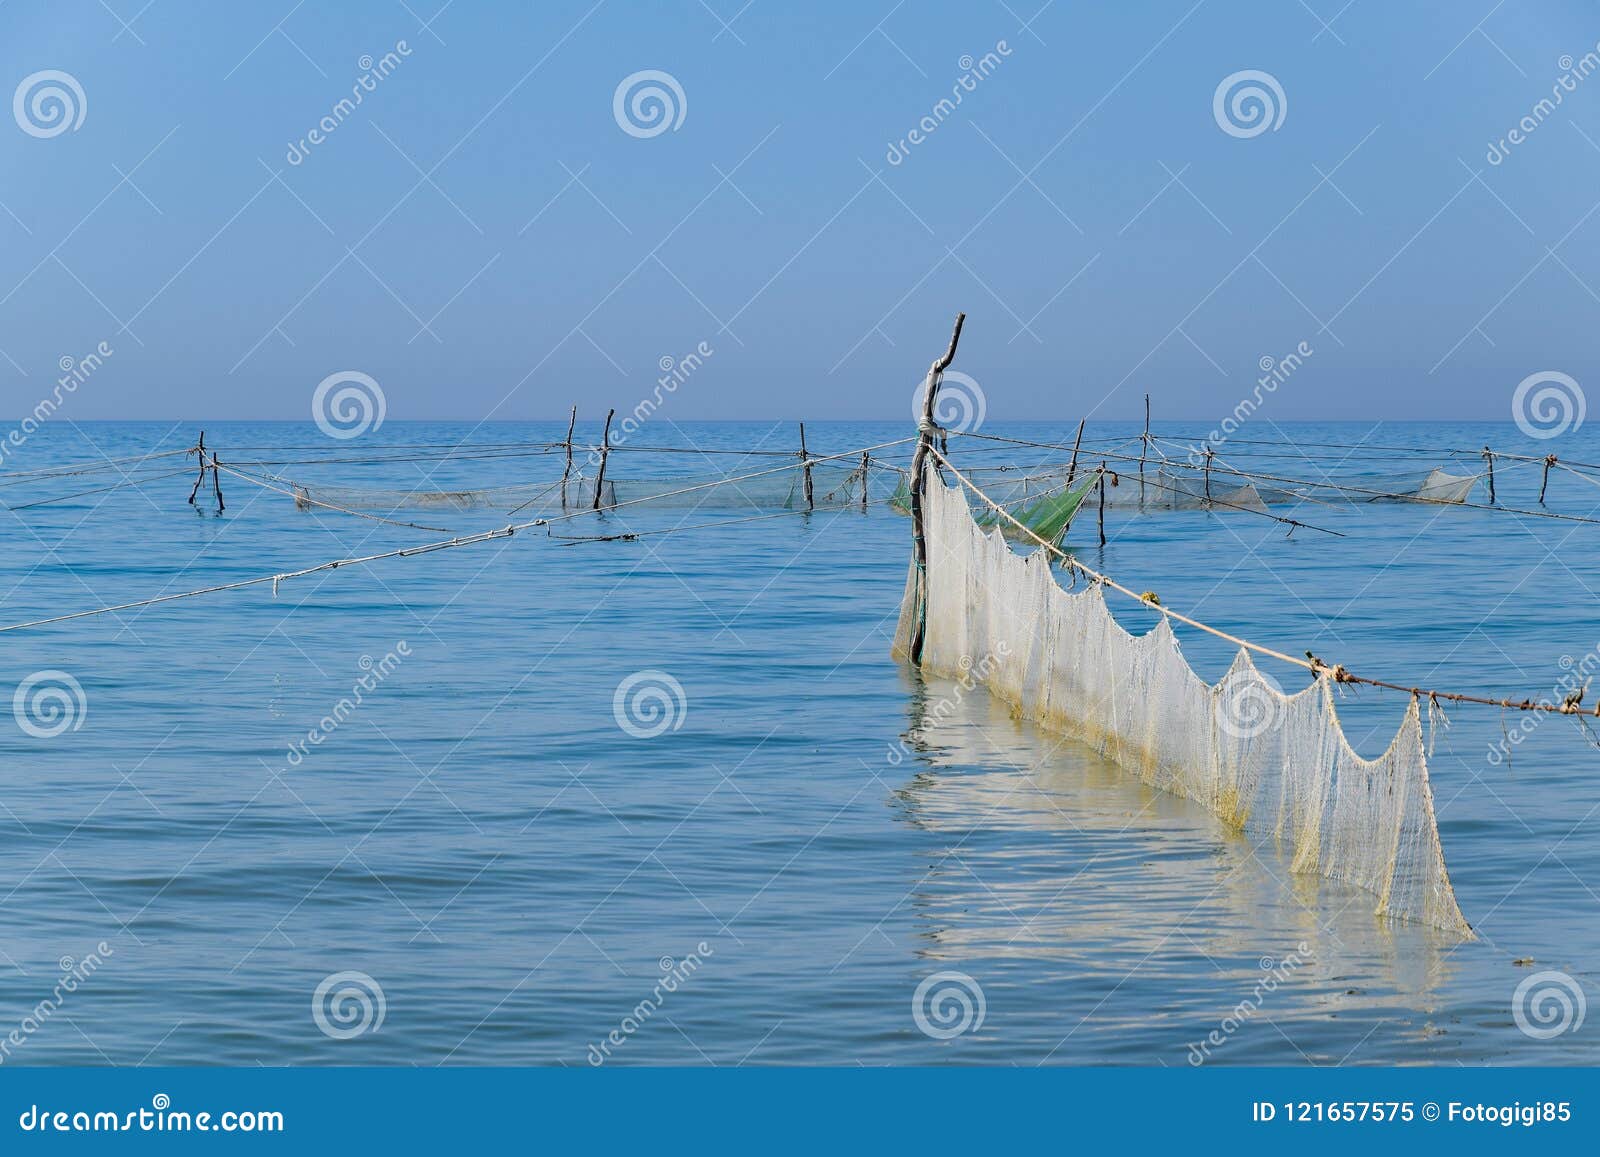 Redes De Pesca Fijadas En El Mar Redes De Pesca Imagen de archivo - Imagen  de costa, estilo: 121657575